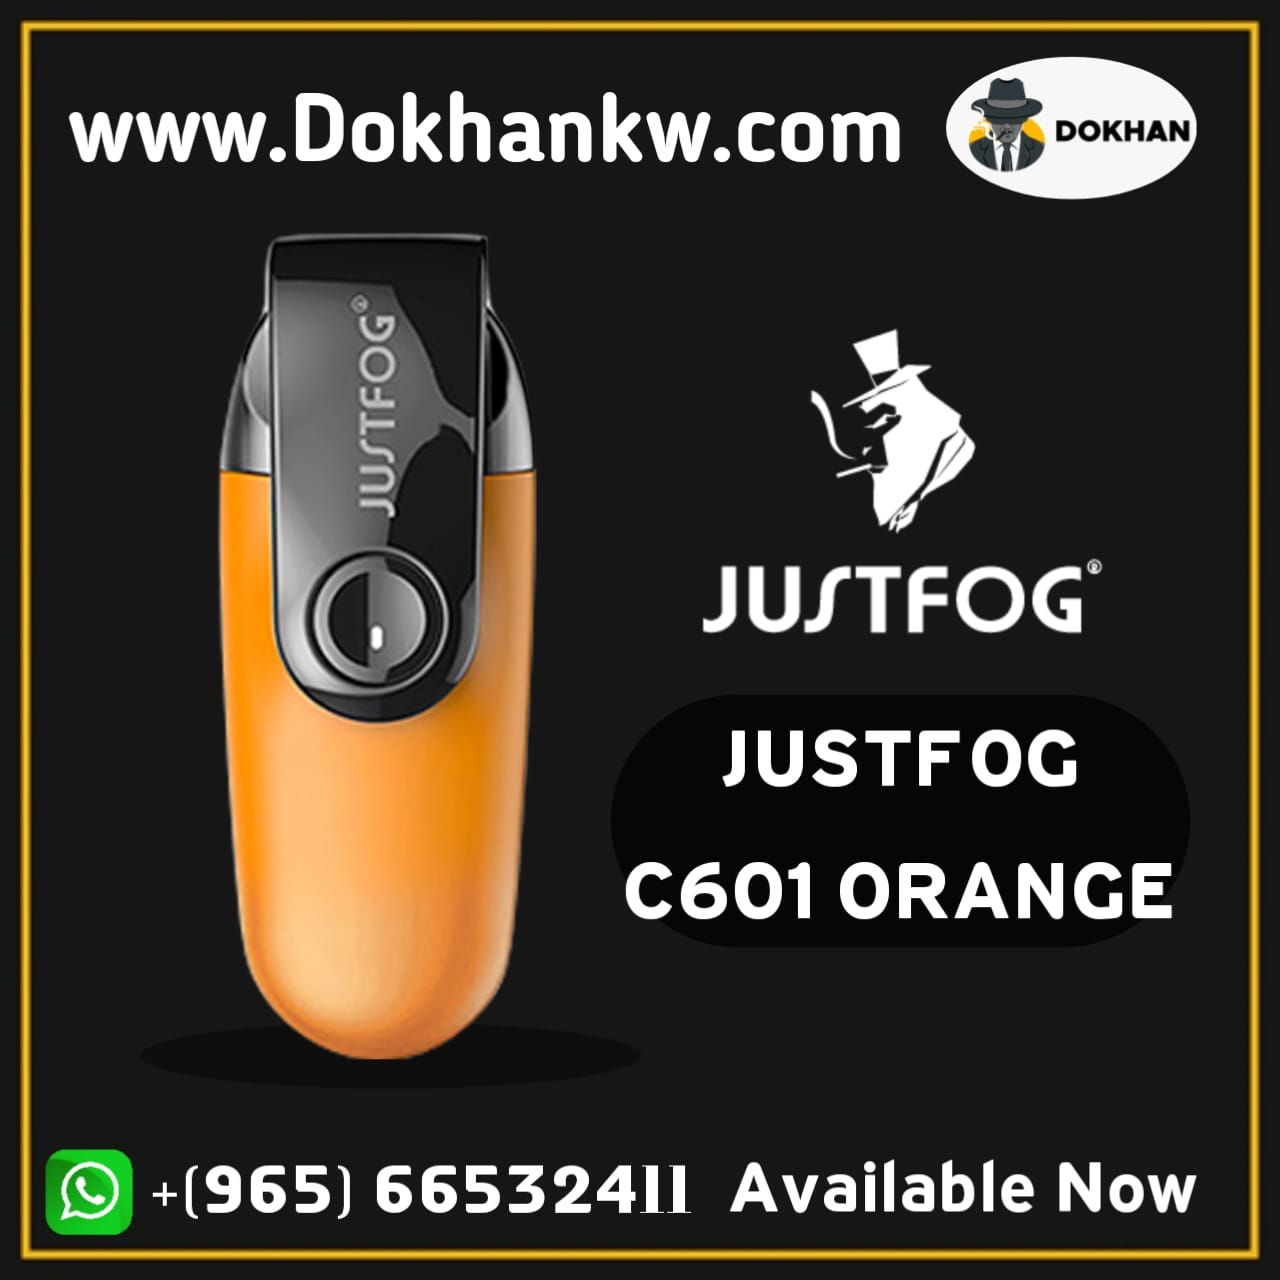 JUSTFOG C601 ORANGE